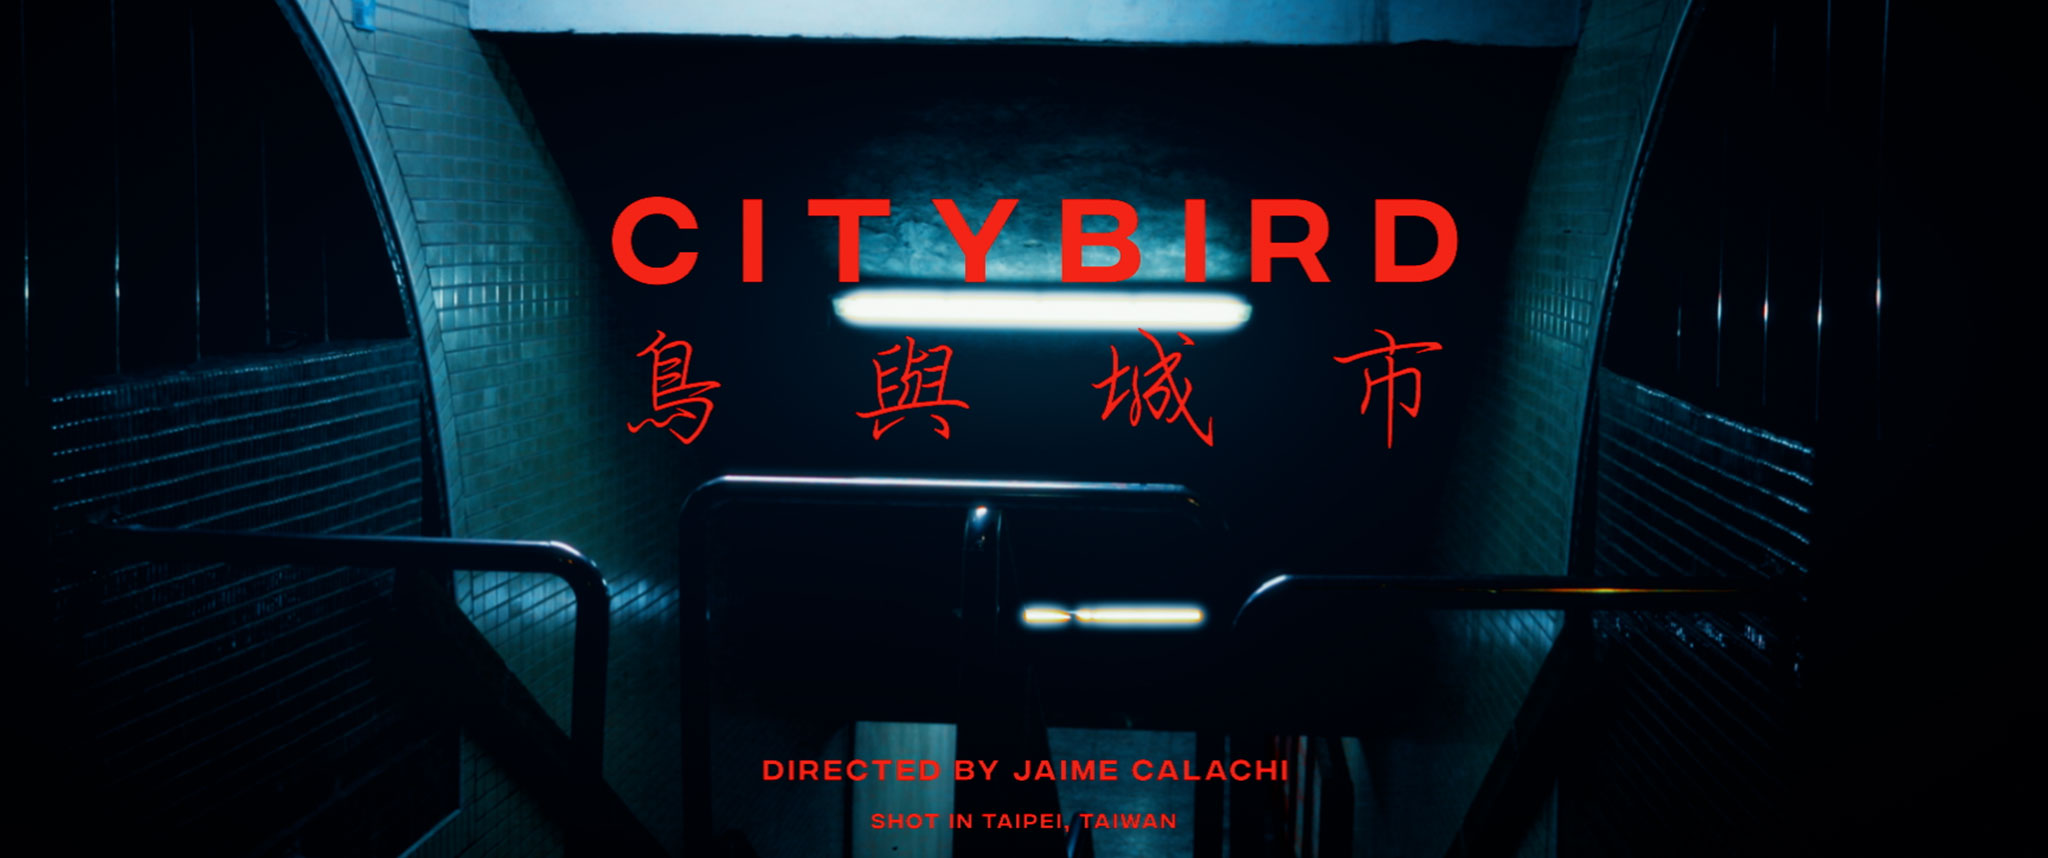 Citybird_thumb